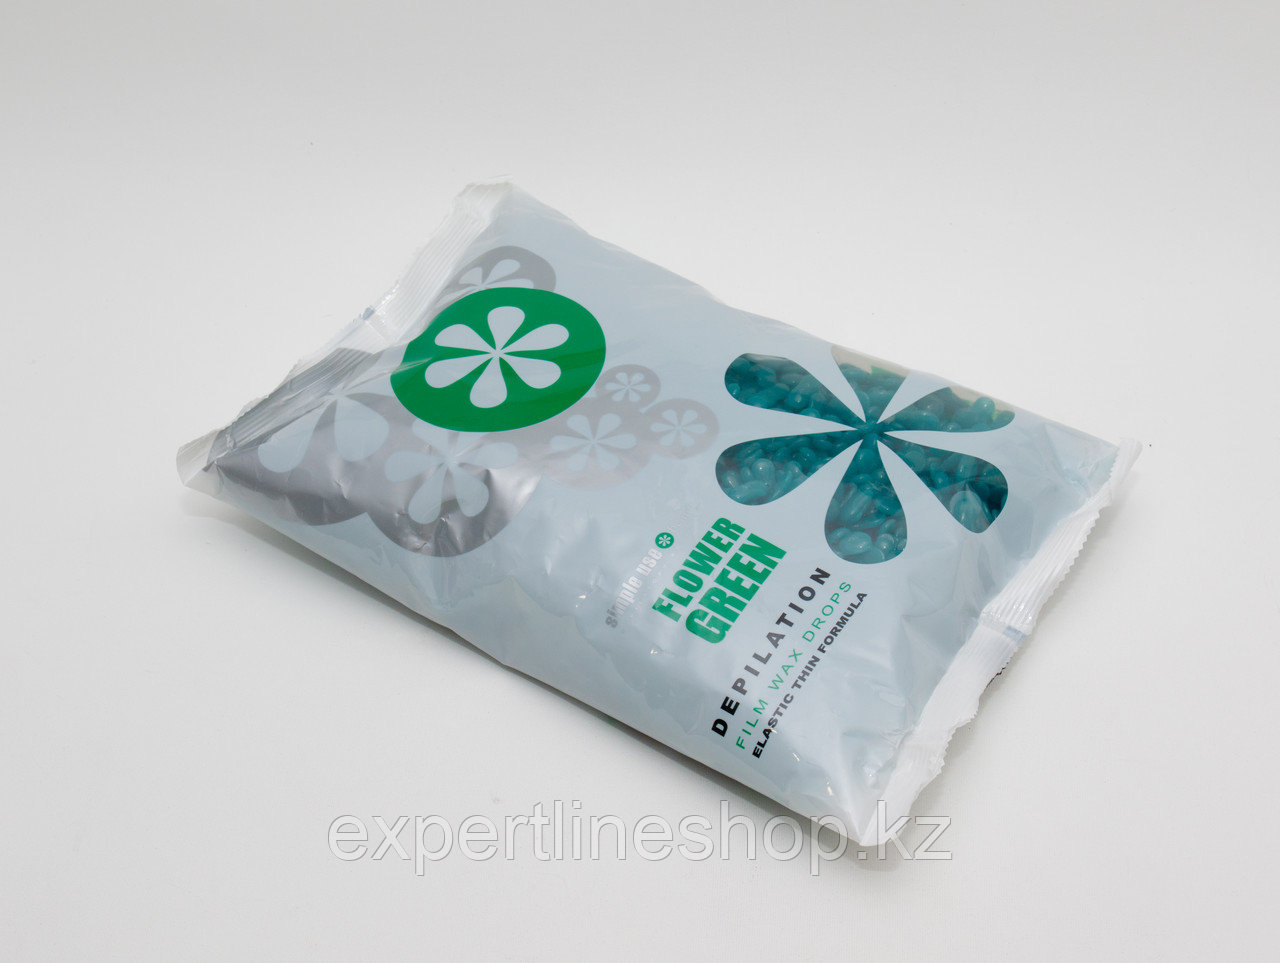 Горячий воск для депиляции SIMPLE USE BEAUTY - Flower Green, гранулы, 800 гр